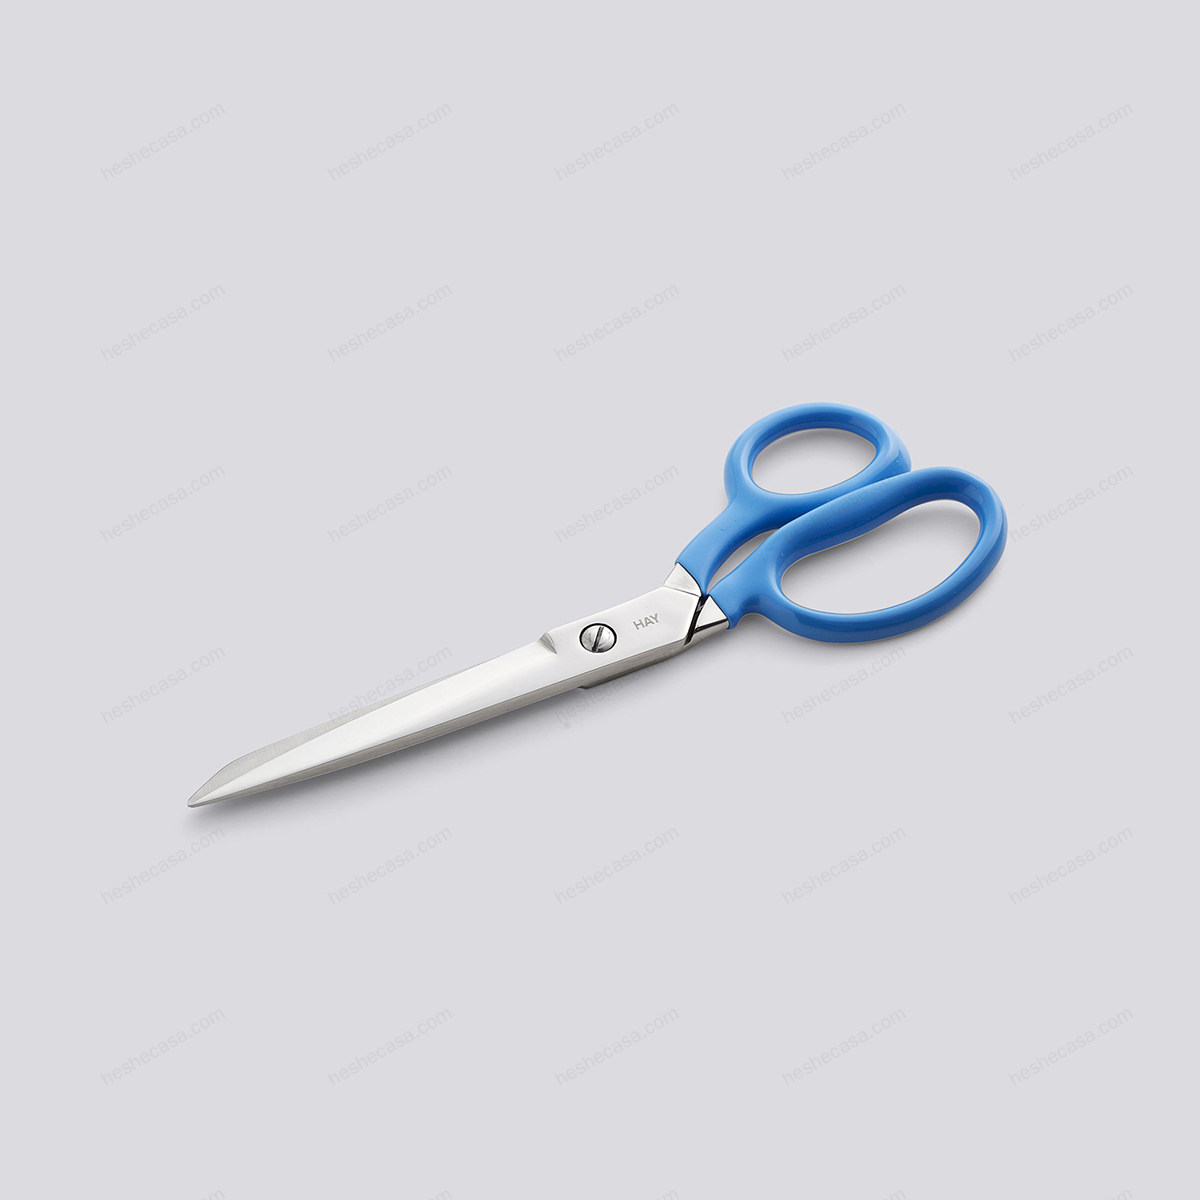 Grip Scissors 剪刀